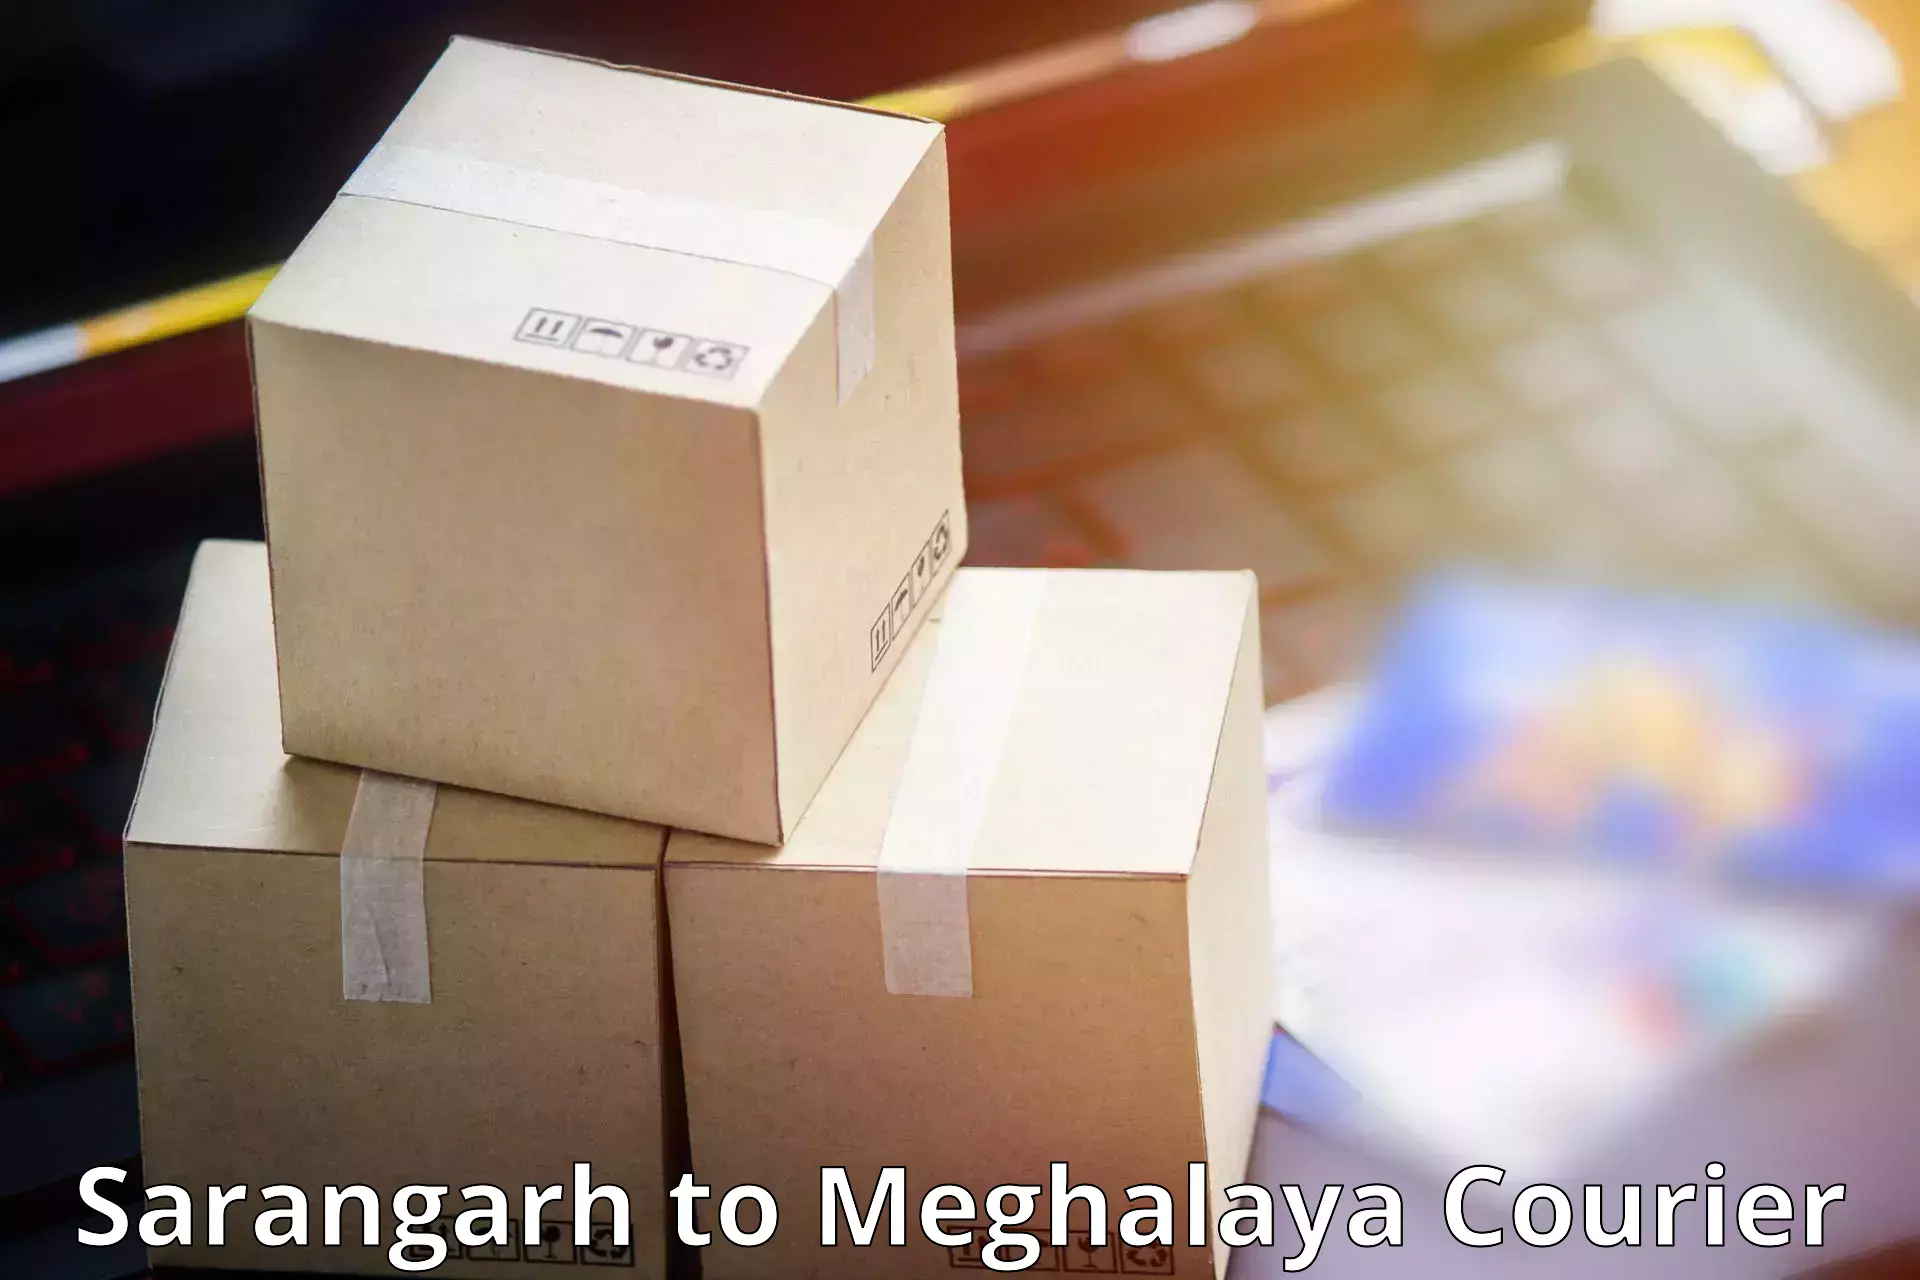 Express logistics Sarangarh to Meghalaya